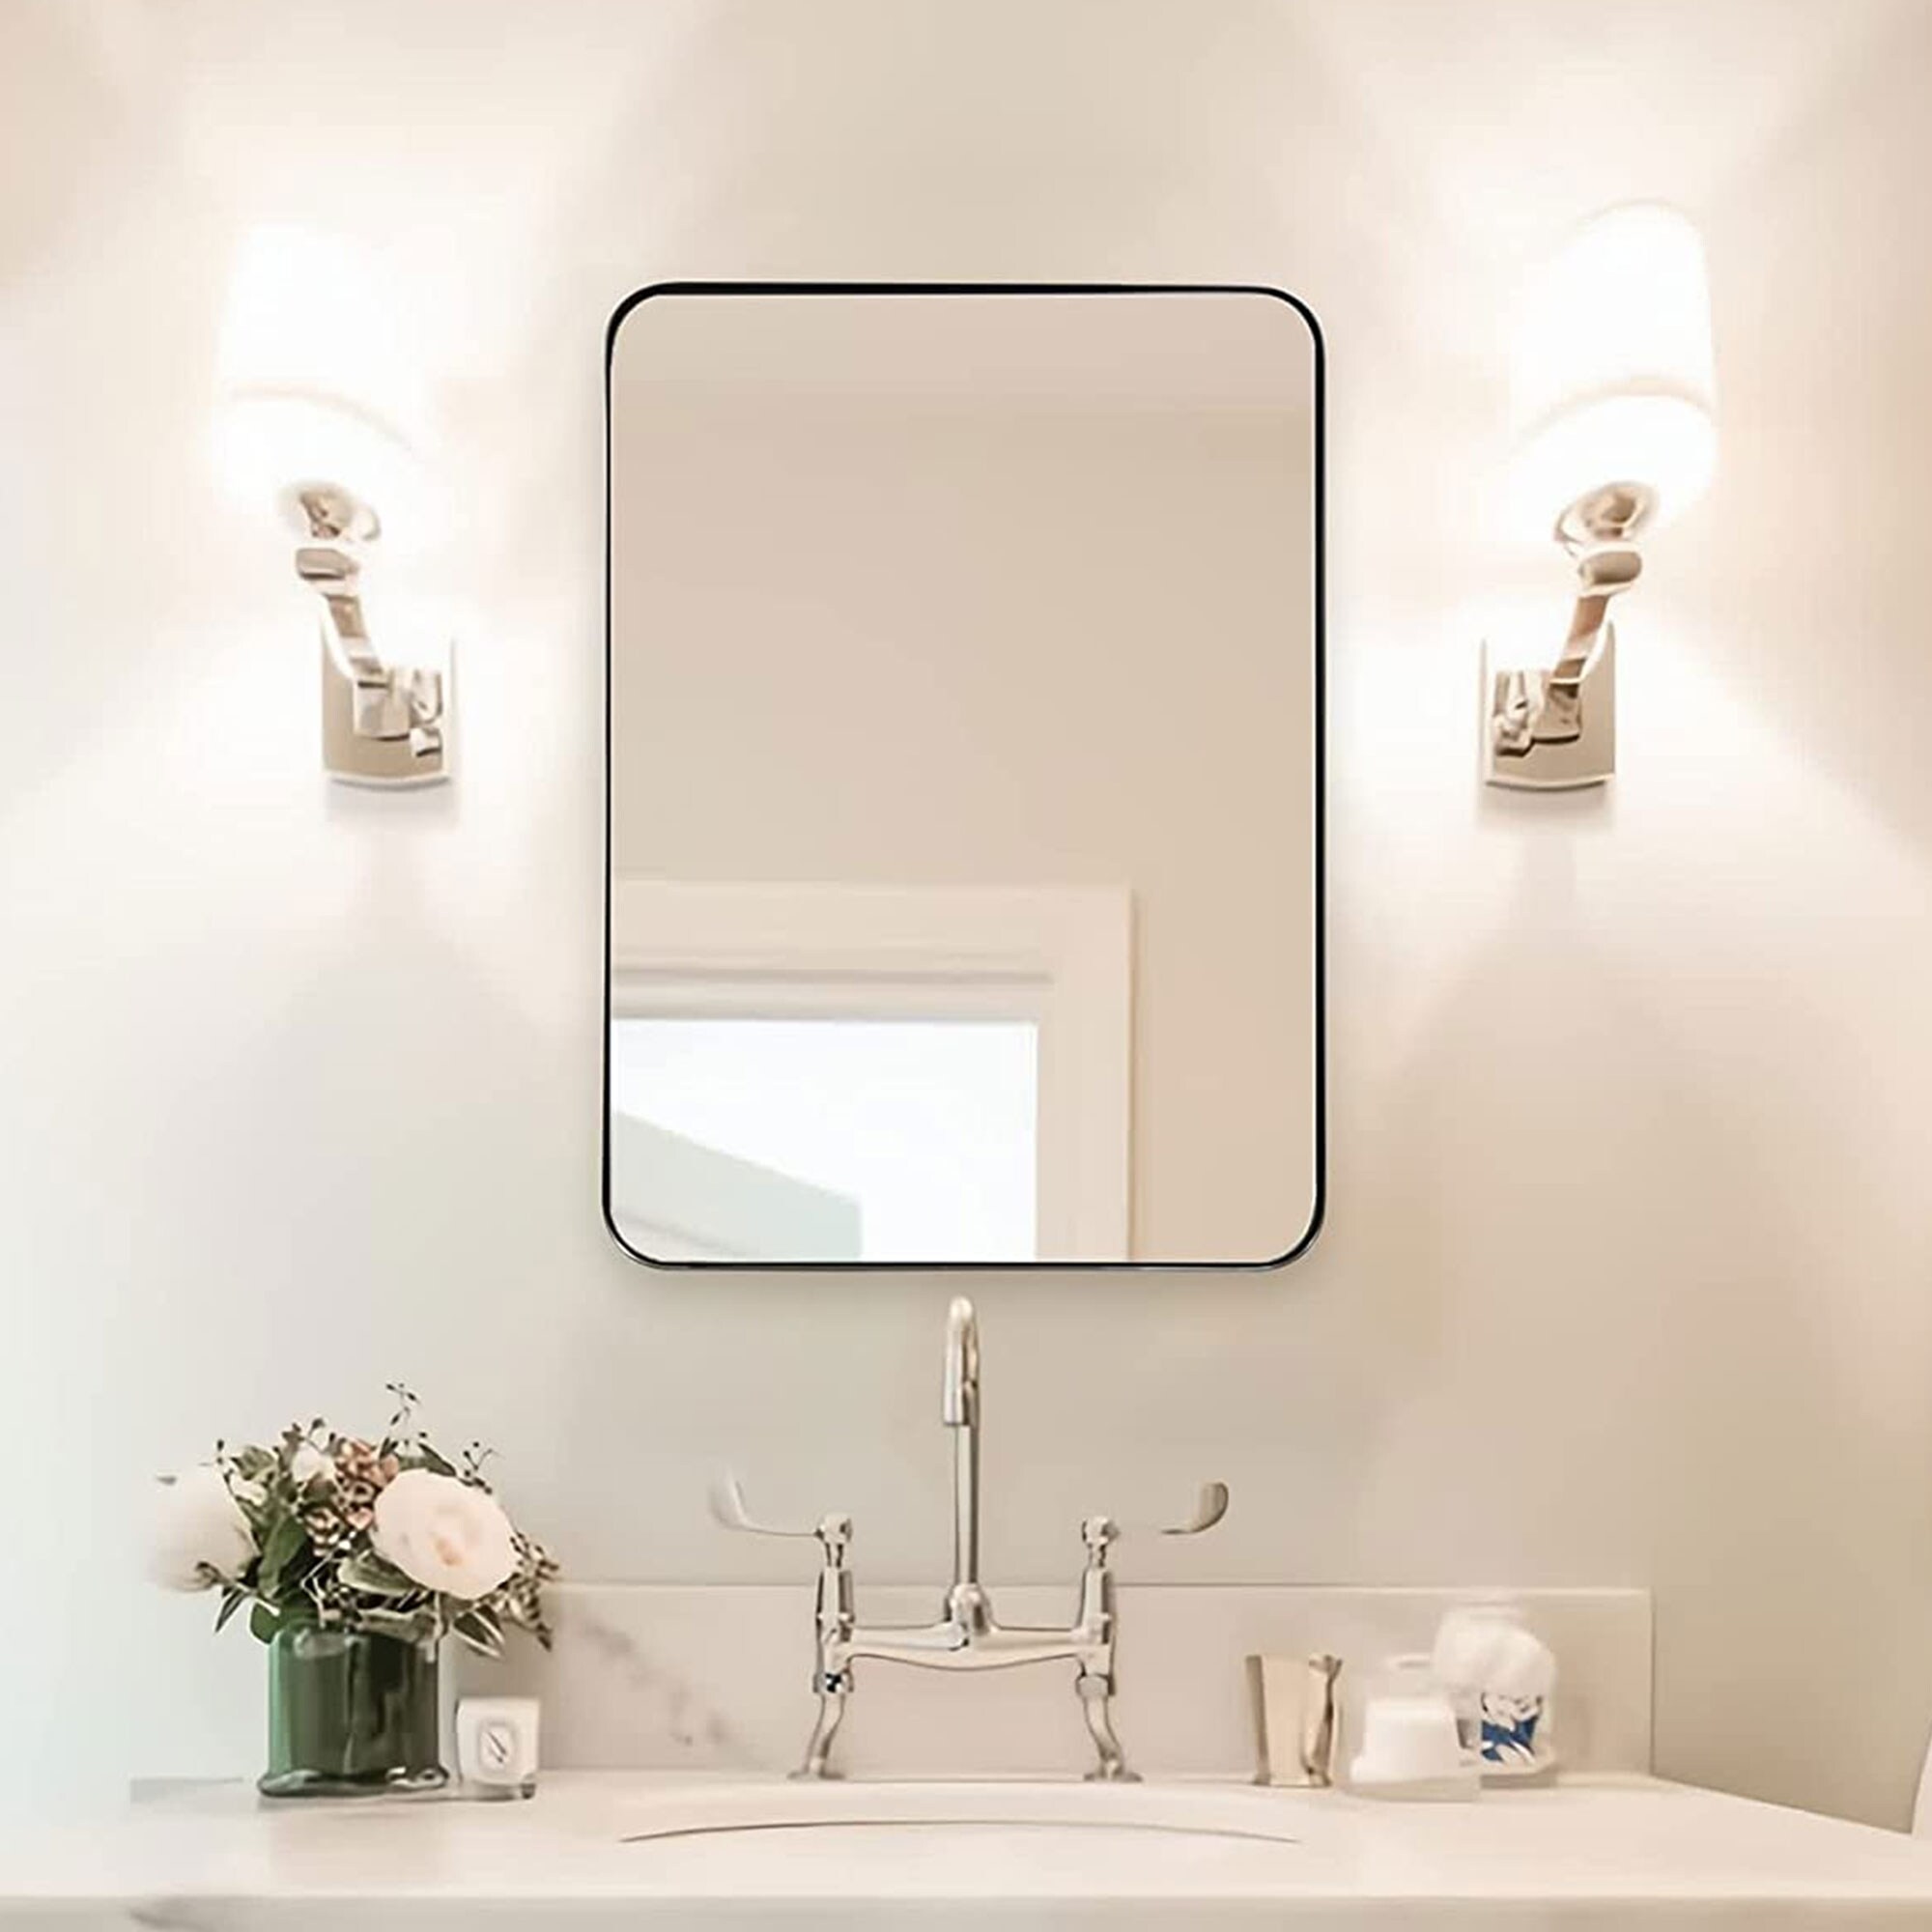 ANDY STAR Irregular Mirror Asymmetrical Mirror for Wall 24x36” Brushed Gold  Bathroom Mirror, Modern Wall Mirror for Living Room Bathroom Vanity Framed